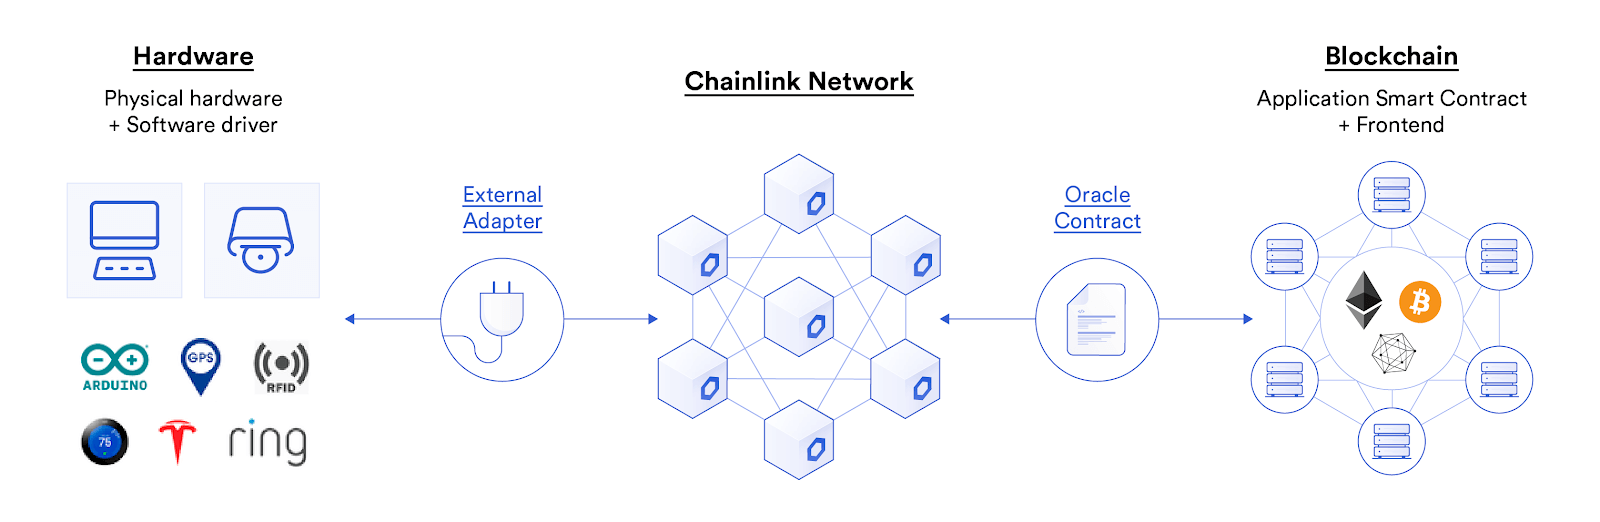 Chainlink External Adapters